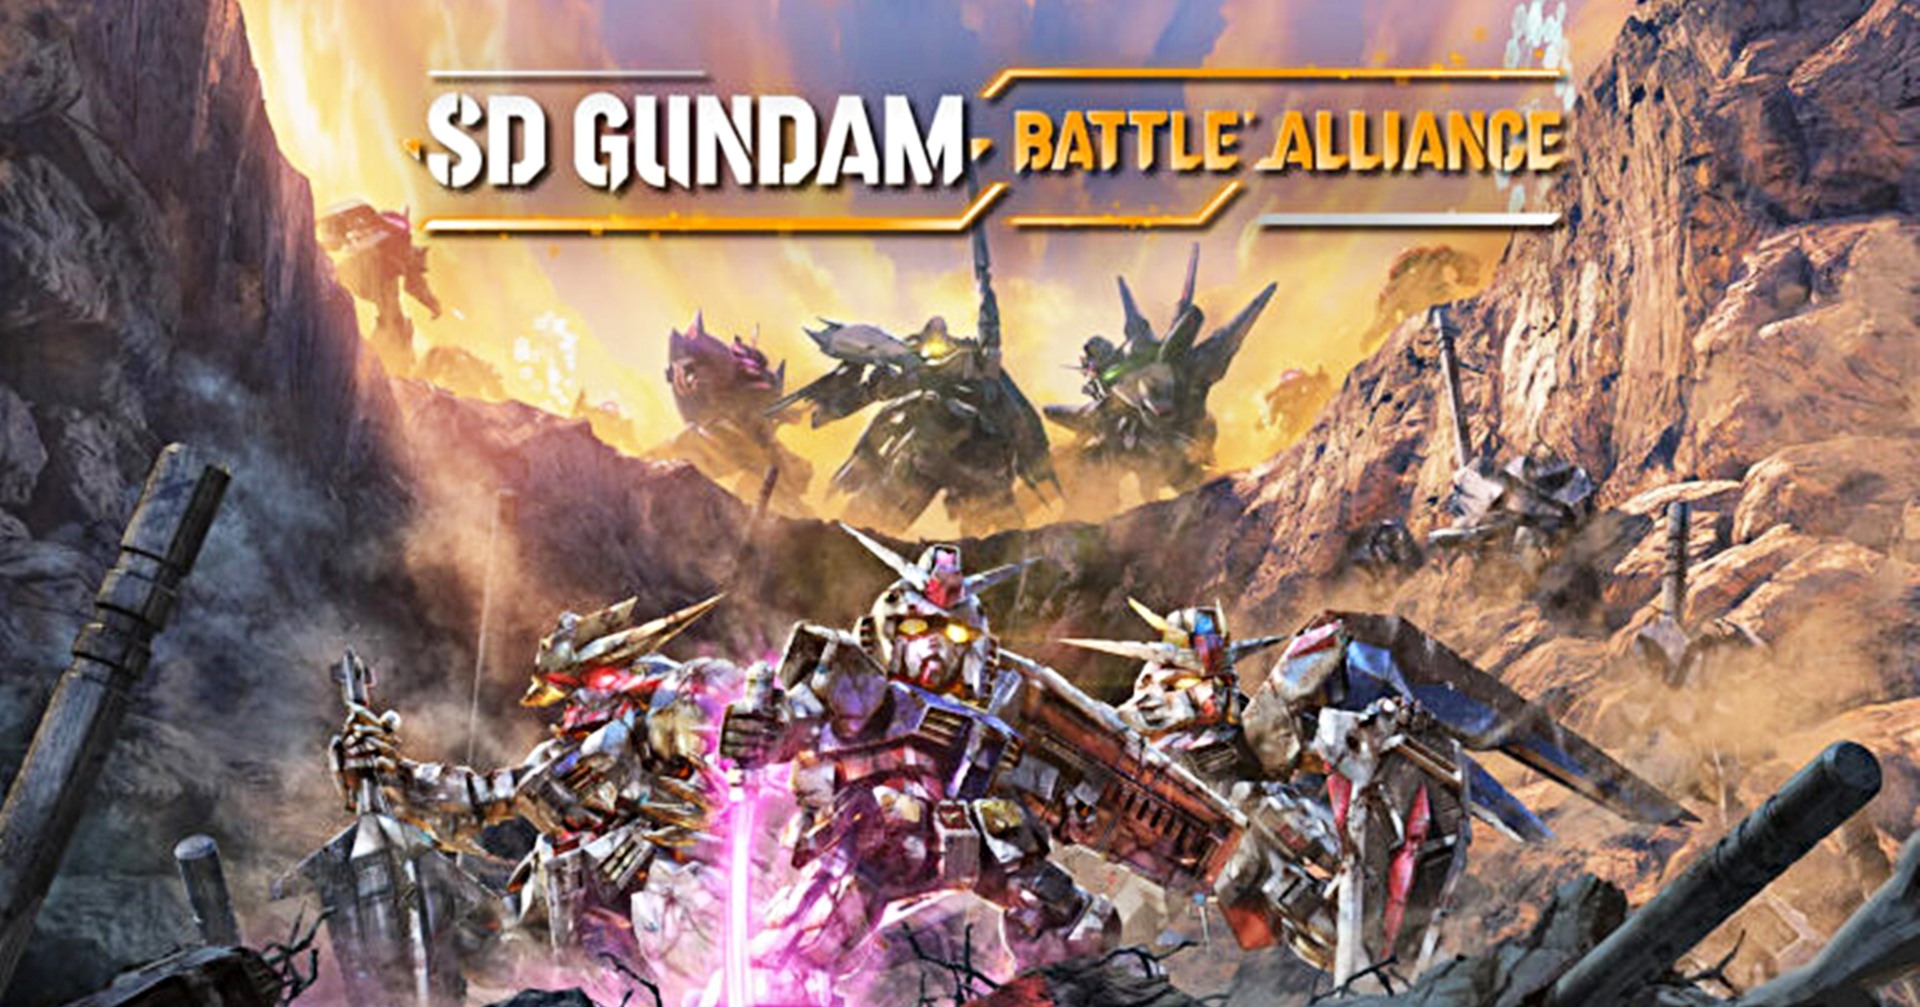 เปิดรายชื่อตัวละครในเกม SD Gundam Battle Alliance ภาคใหม่บนคอนโซล